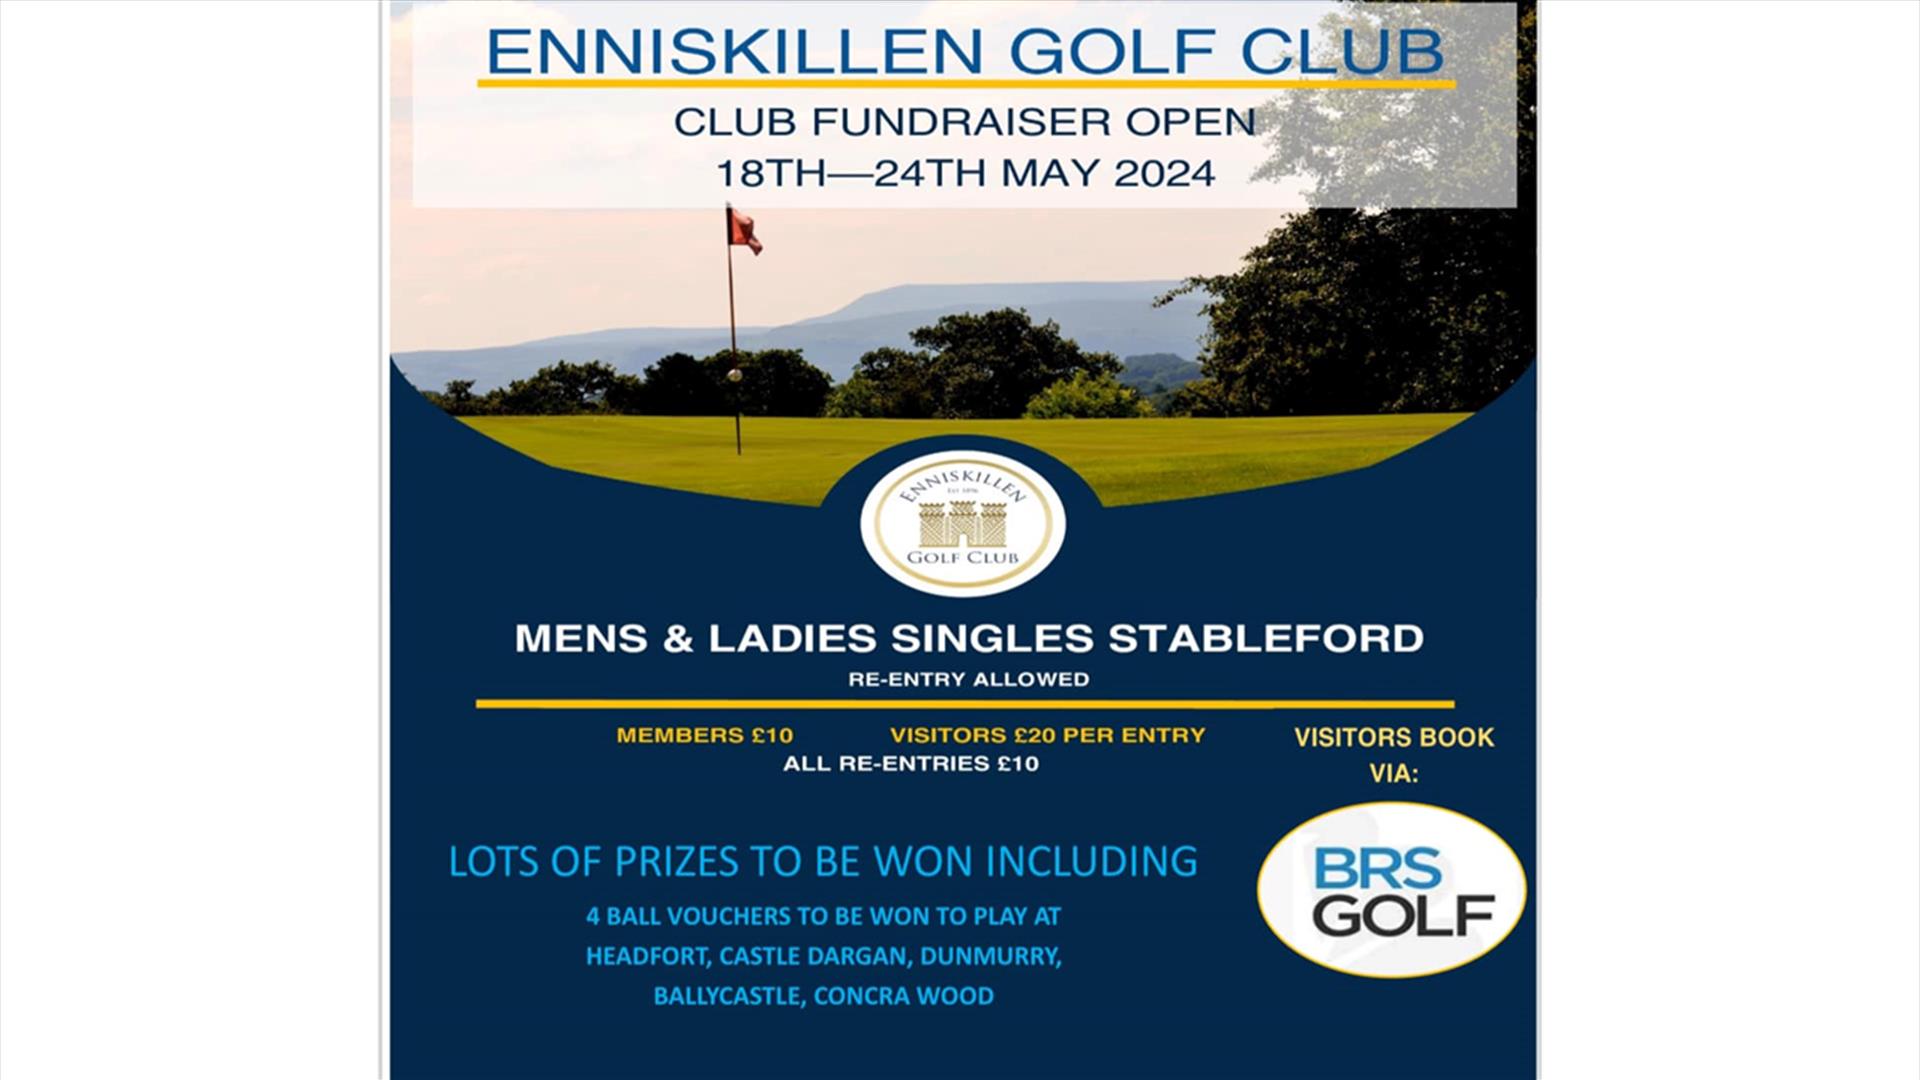 Enniskillen Golf Club - Annual Club Fundraiser Open